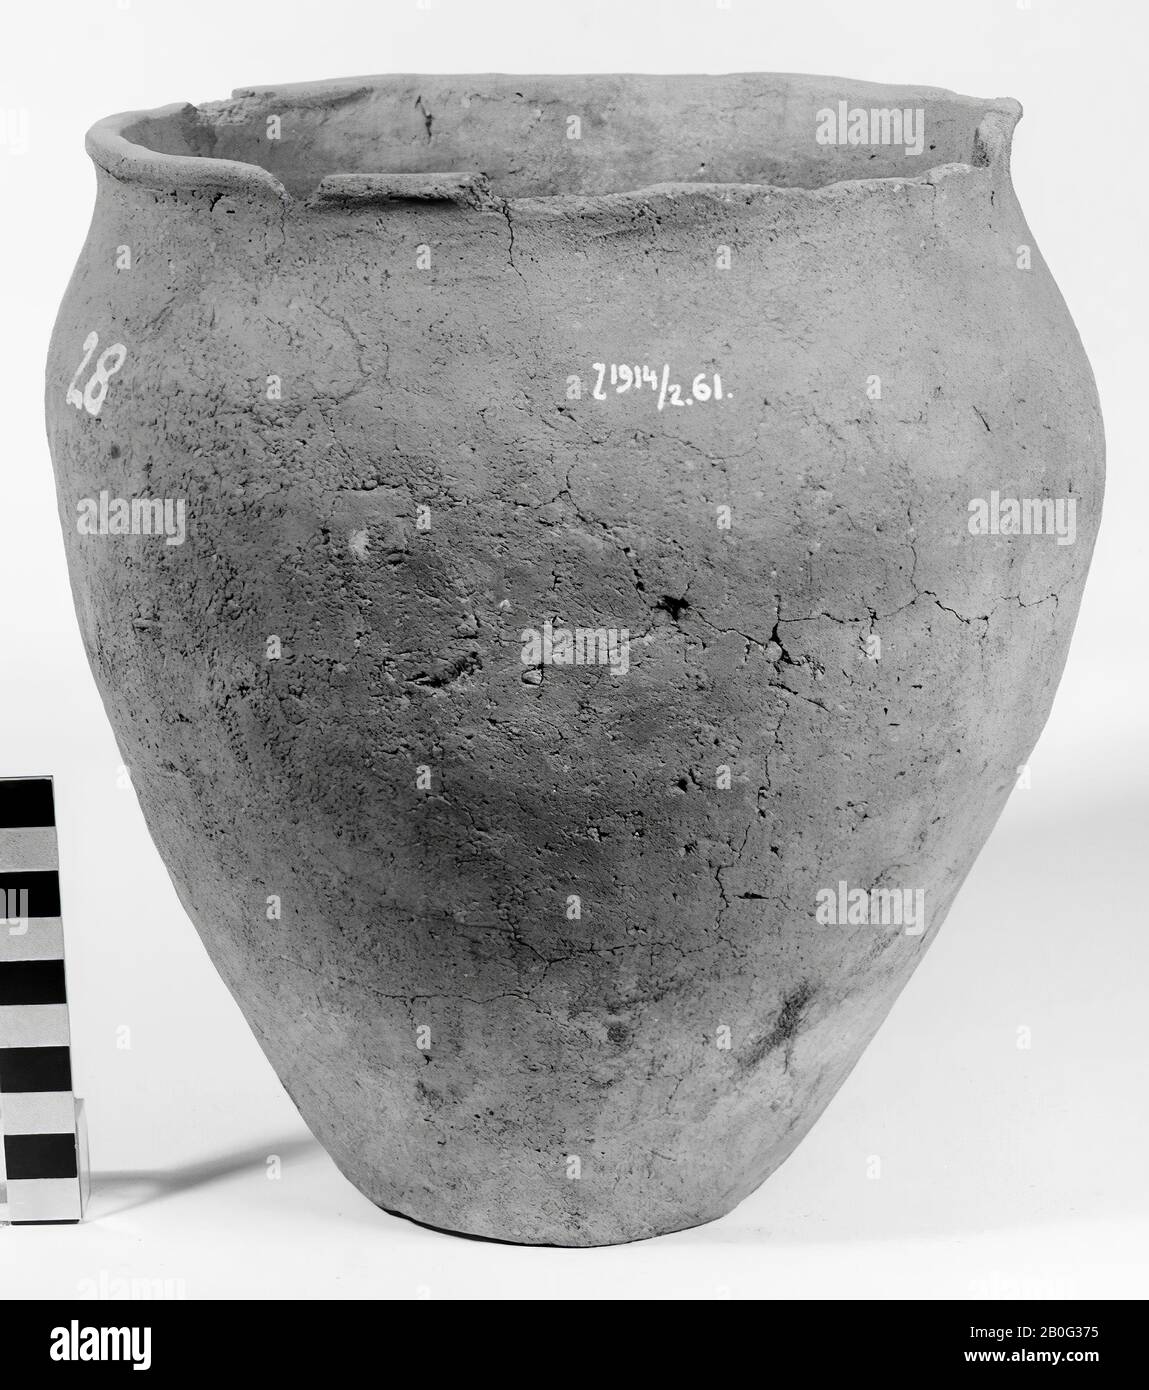 Ovale Urne aus Steingut. Kantenlücken, Oberflächenrisse, Urne, Keramik, h: 24 cm, Durchm: 23 cm, Vorgeschichte -800 Stockfoto